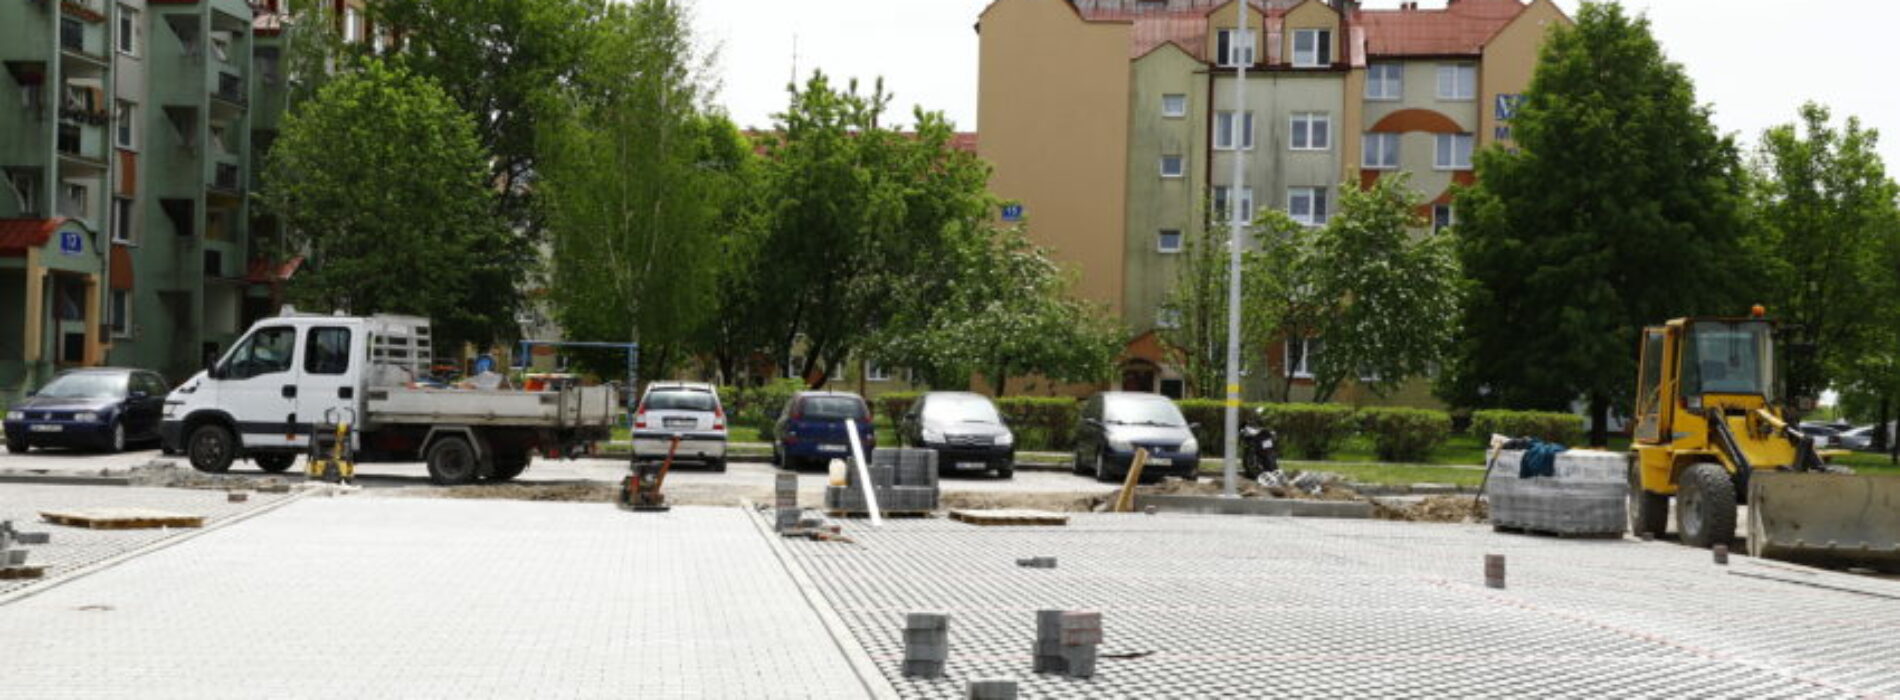 Powstają nowe parkingi przy ulicy Warneńczyka